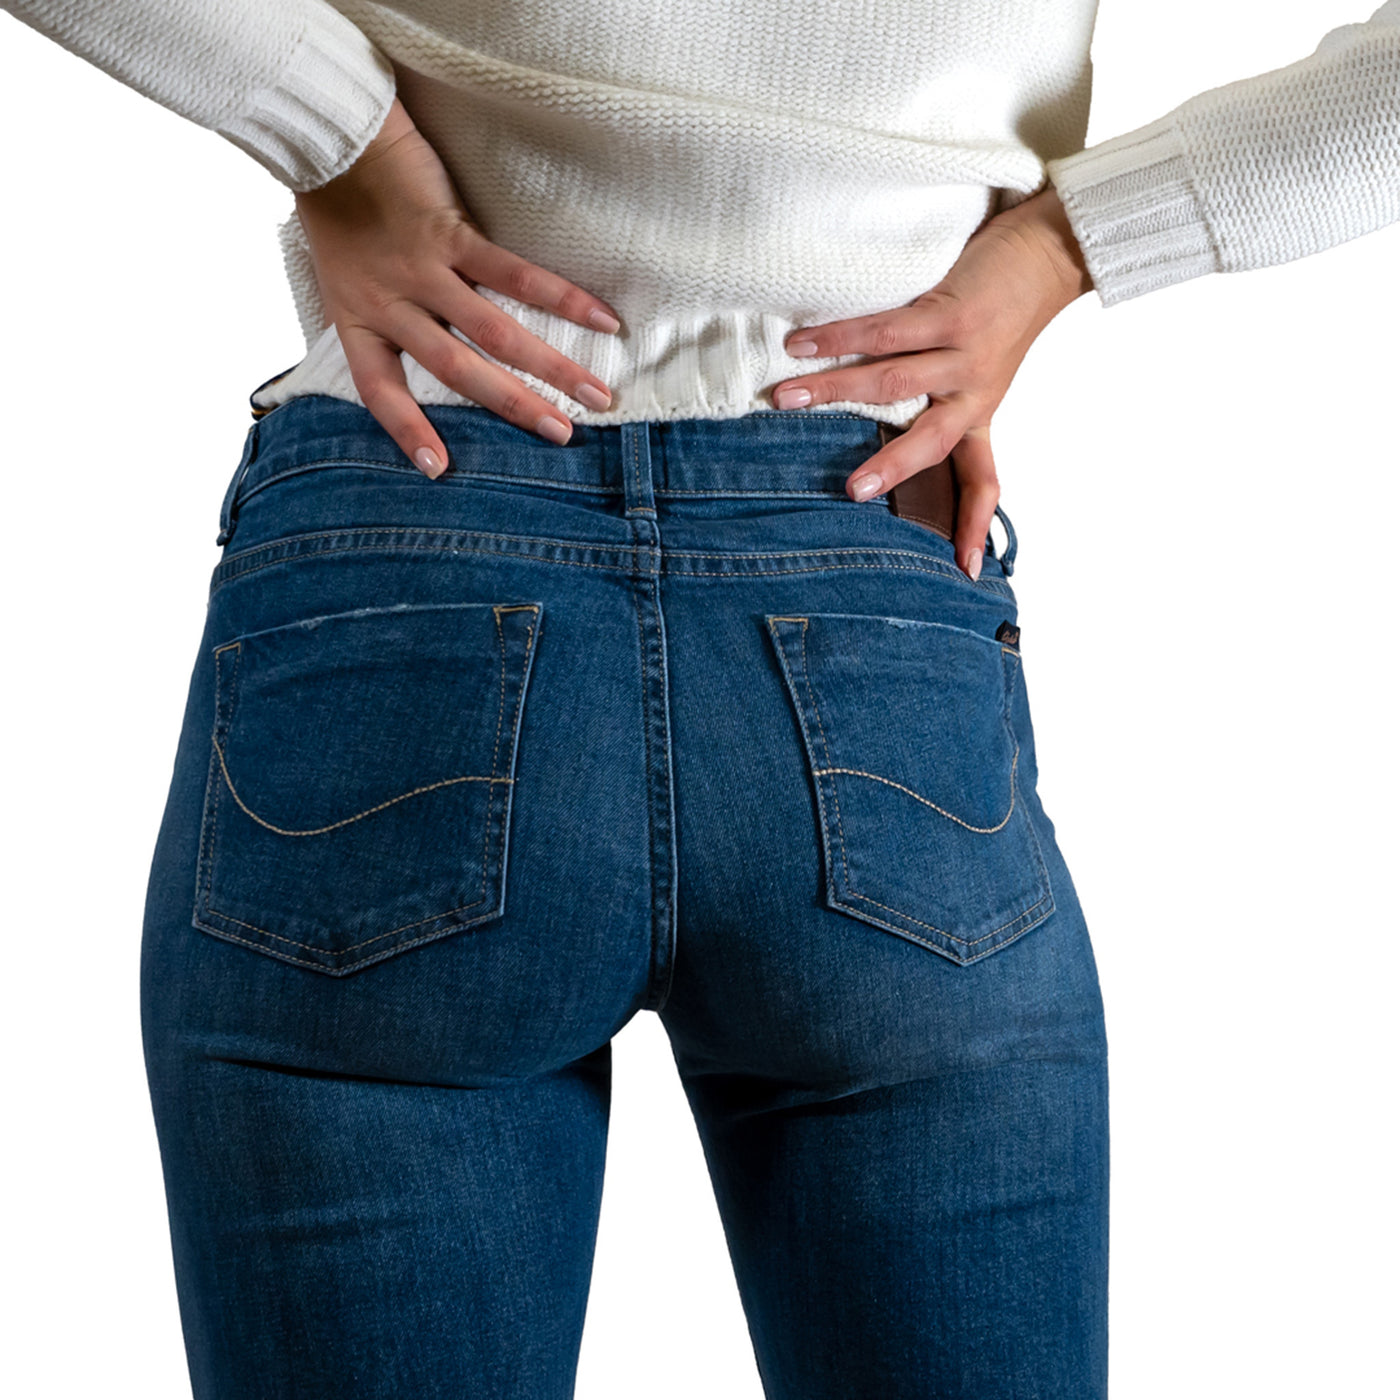 Women's slim trousers